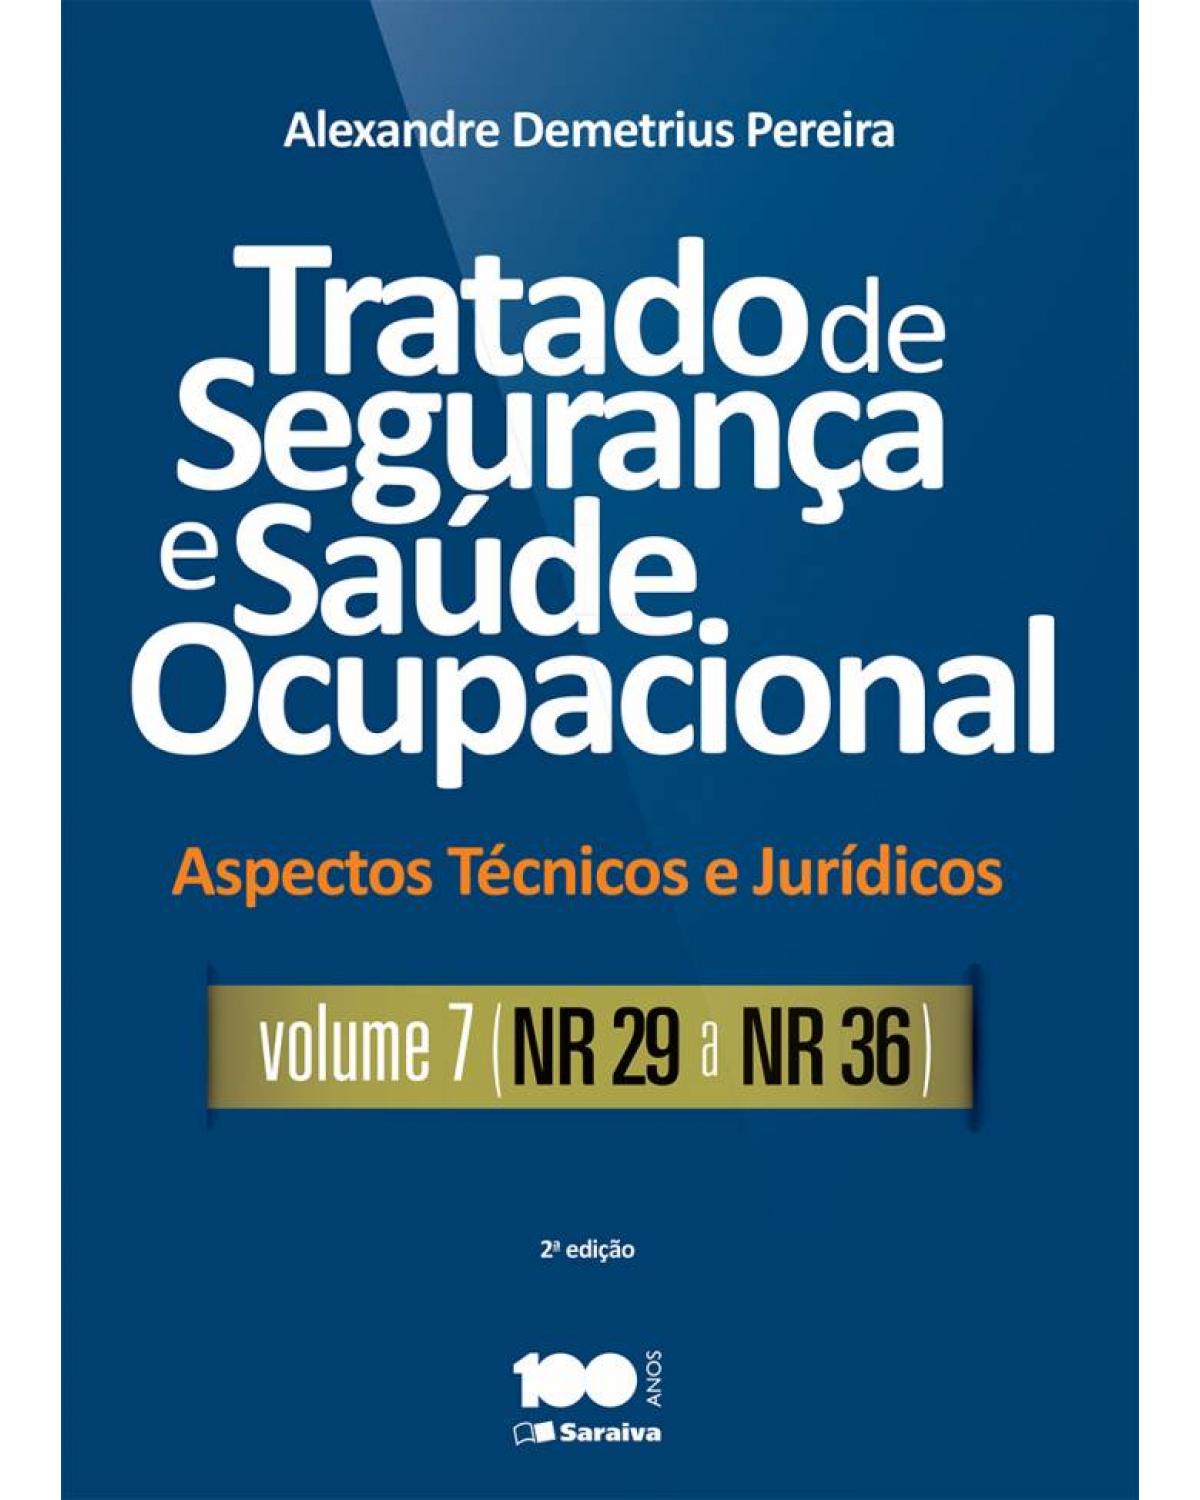 Tratado de segurança e saúde ocupacional - Volume 7: aspectos técnicos e jurídicos - NR 29 a NR 36 - 2ª Edição | 2015